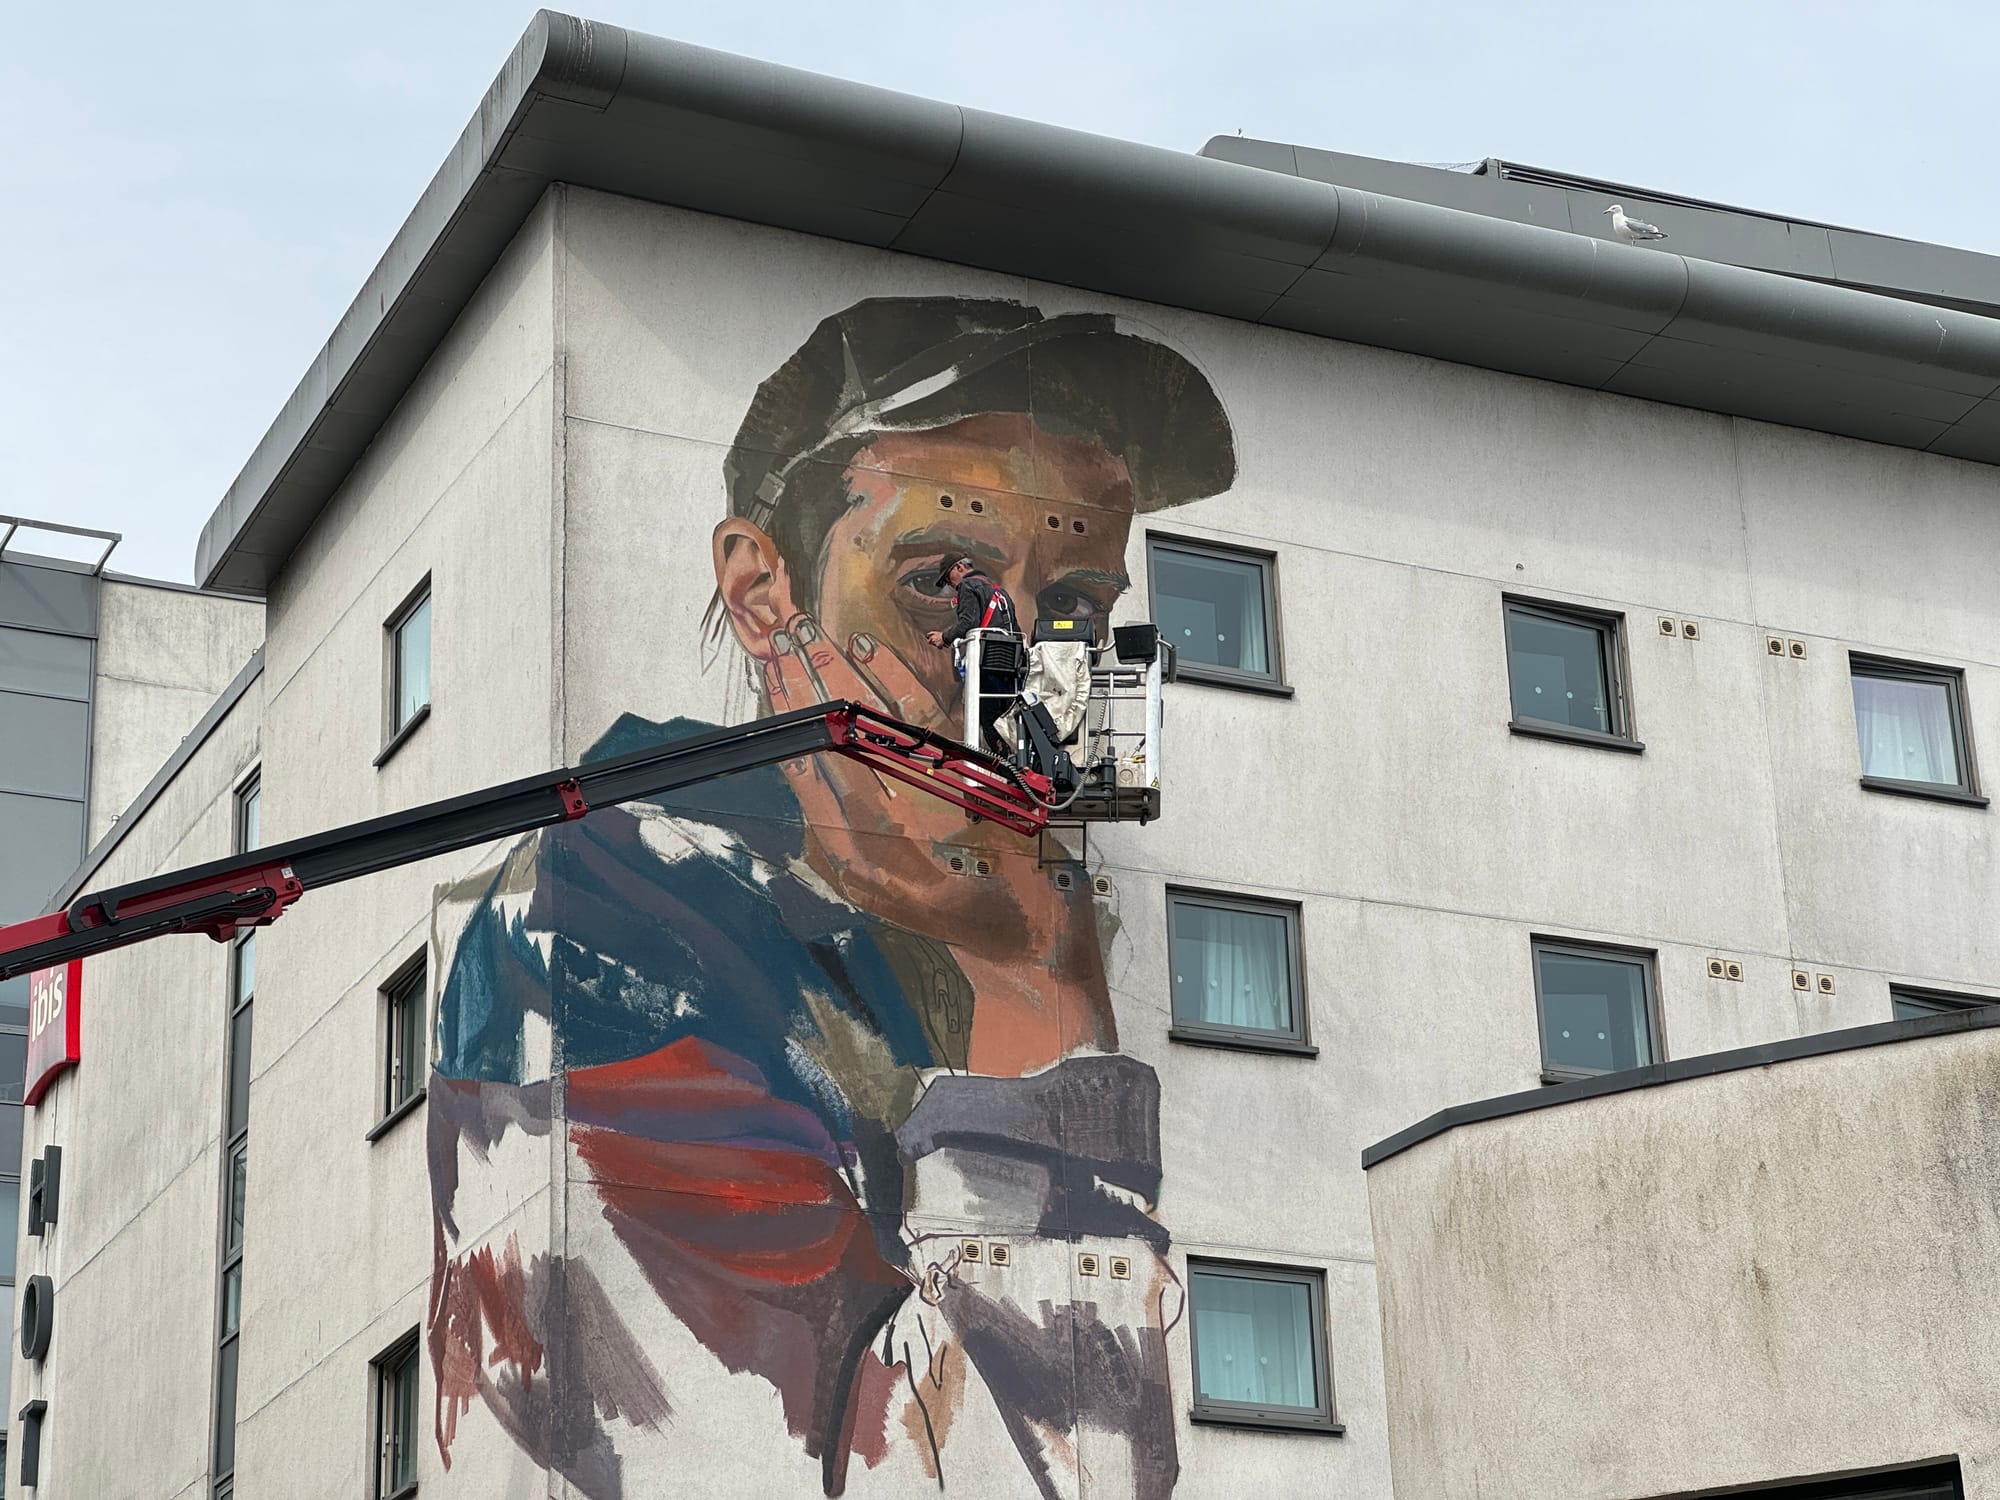 Nuart Aberdeen Earns a Spot Among Top Street Art Festivals